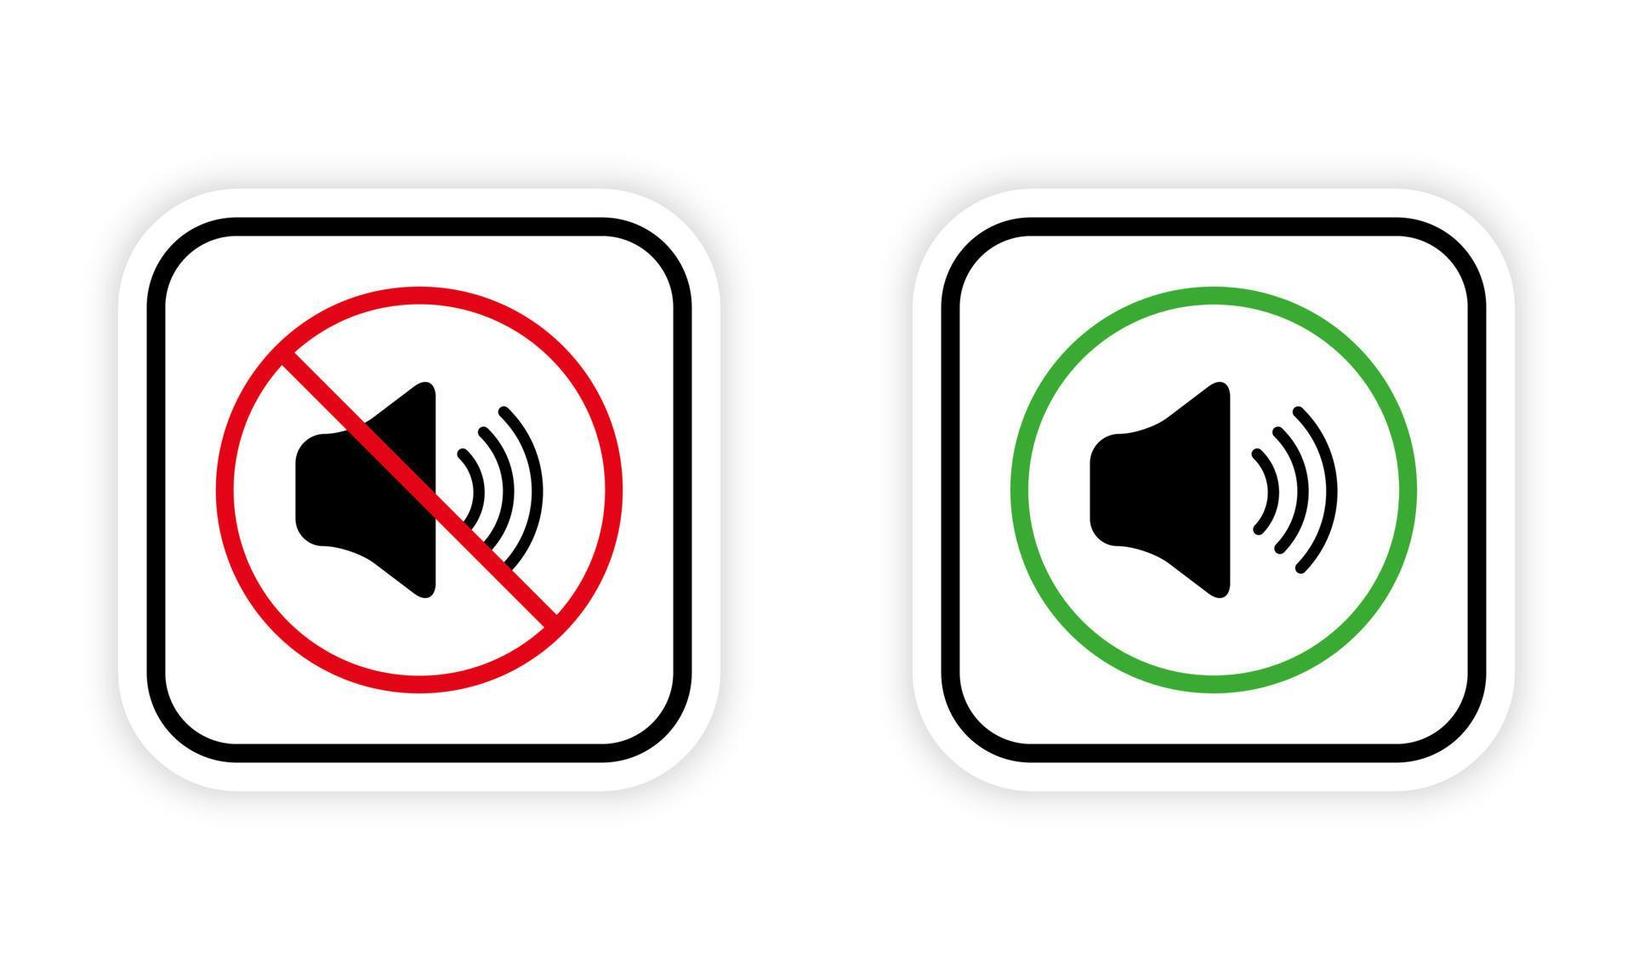 prohibir la zona de notificación de ruido rojo prohibido signo redondo. conjunto de iconos de silueta negra en modo silencio desactivado. símbolo verde de área permitida de sonido fuerte. advertencia guardar silencio. ilustración vectorial aislada. vector